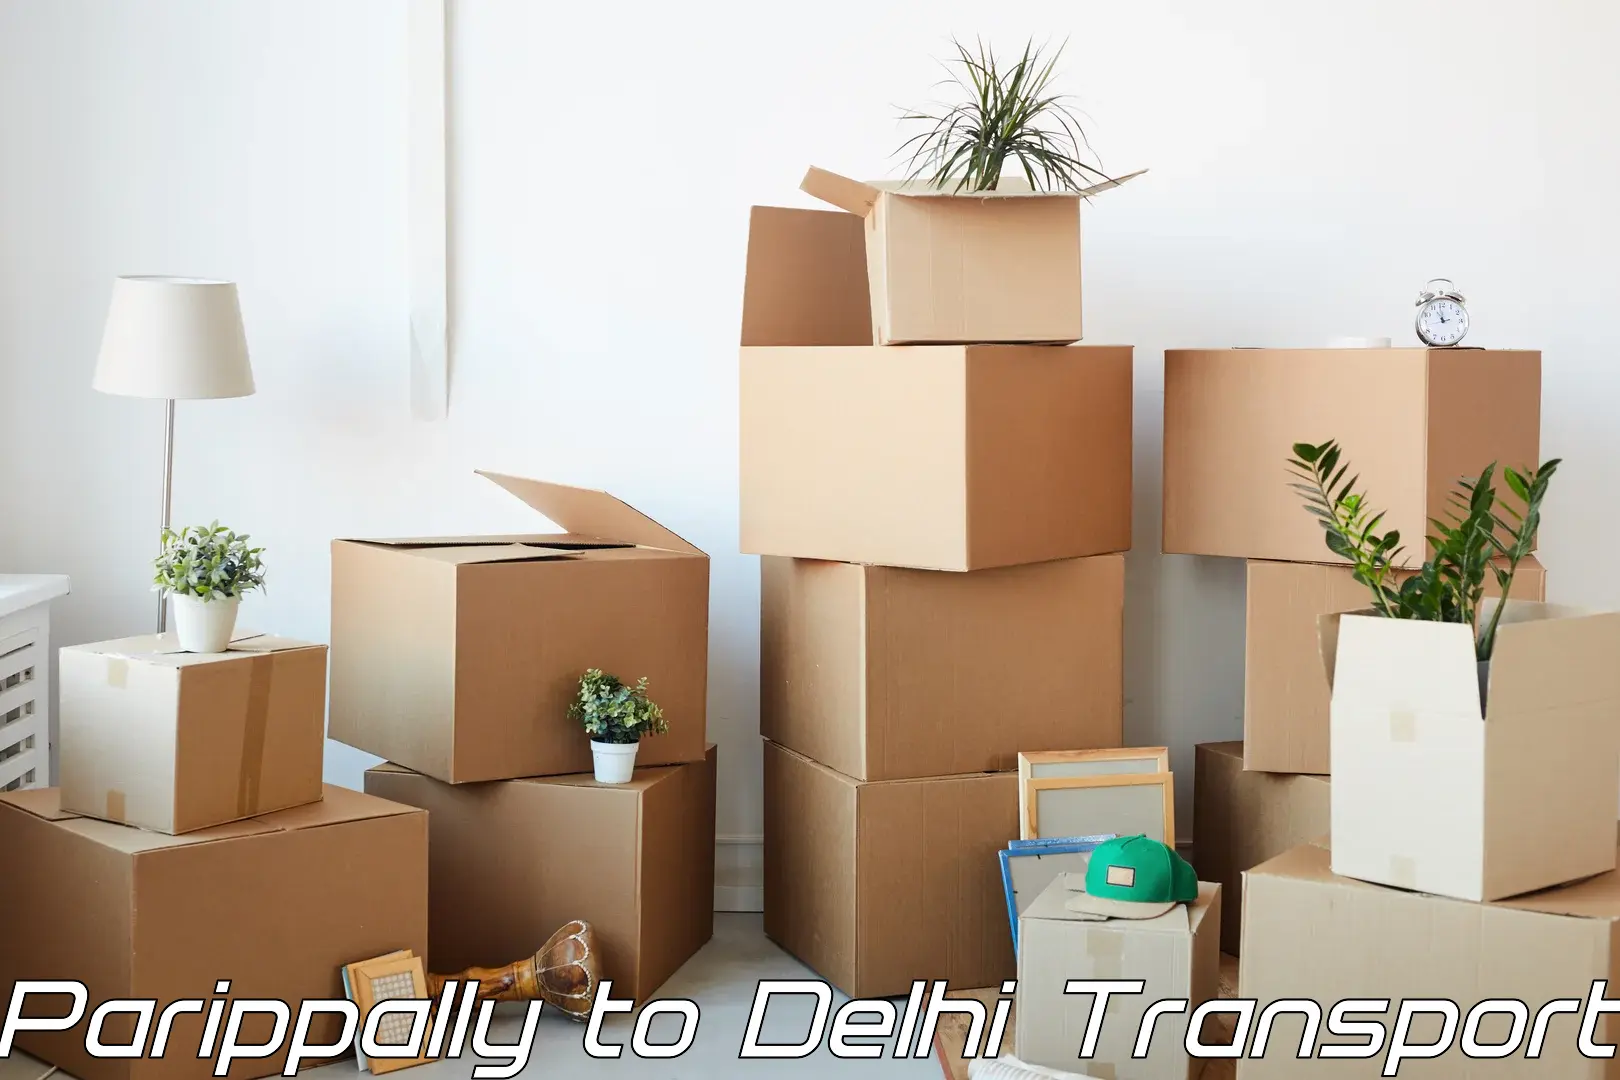 Cargo transport services Parippally to Delhi